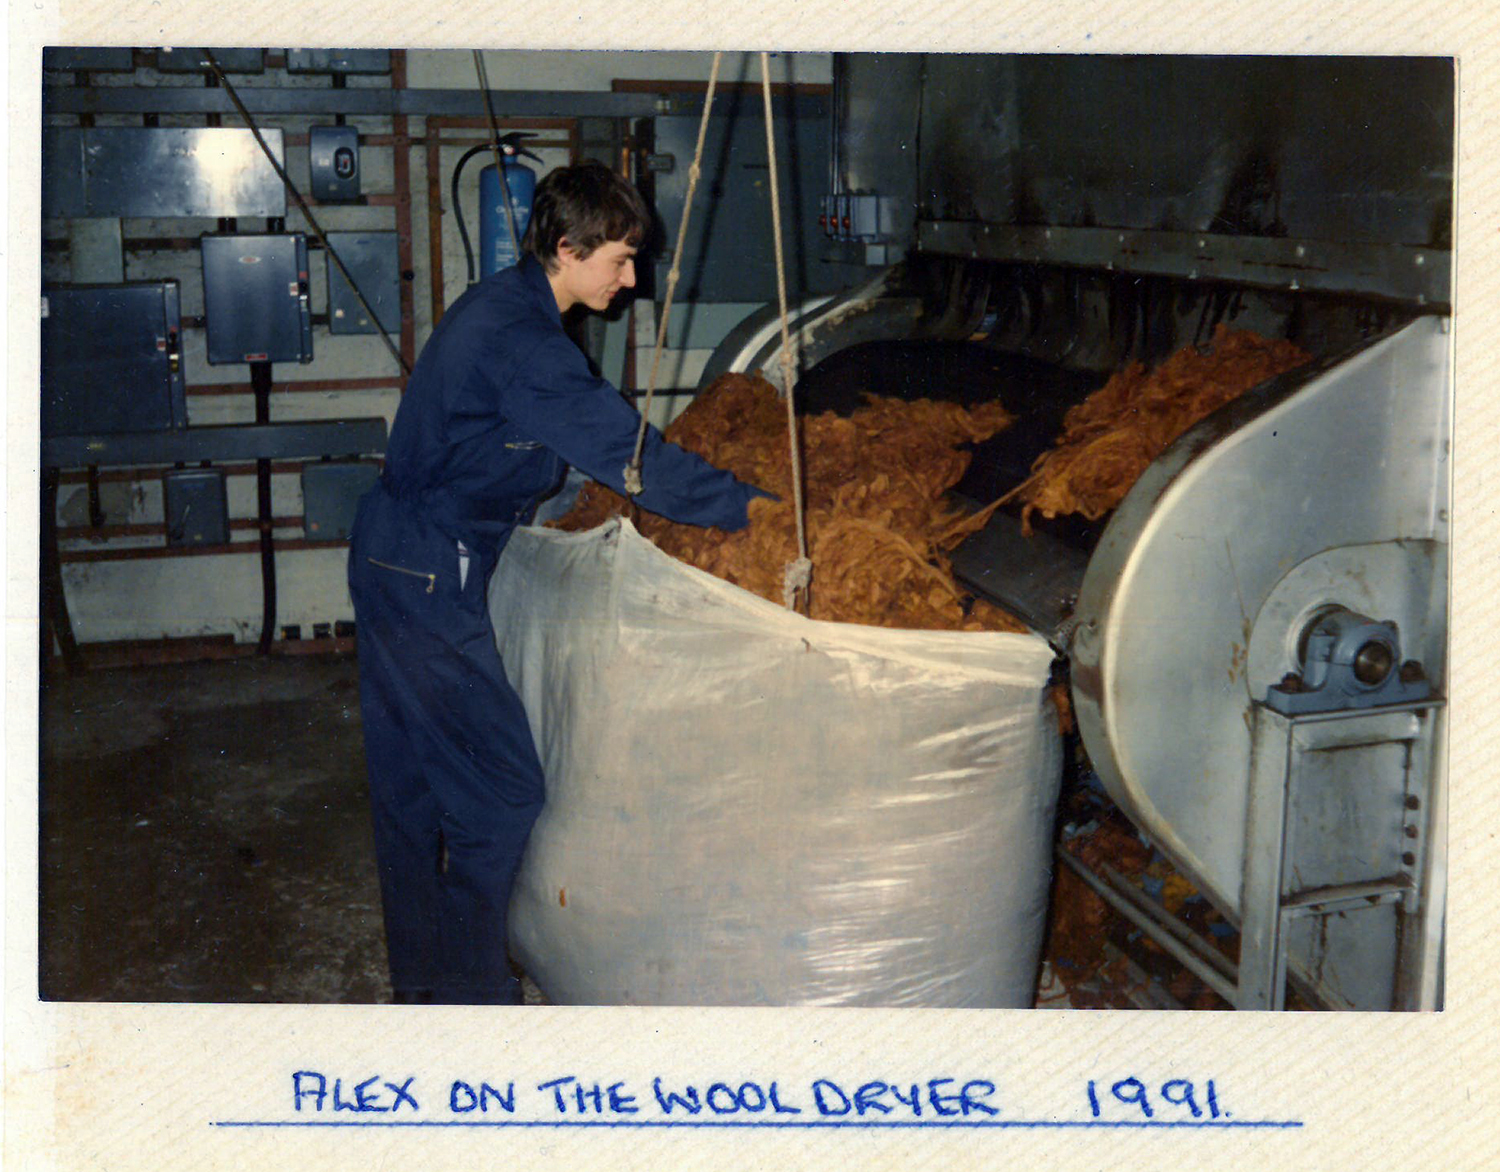 Harris tweed mill wool dryer